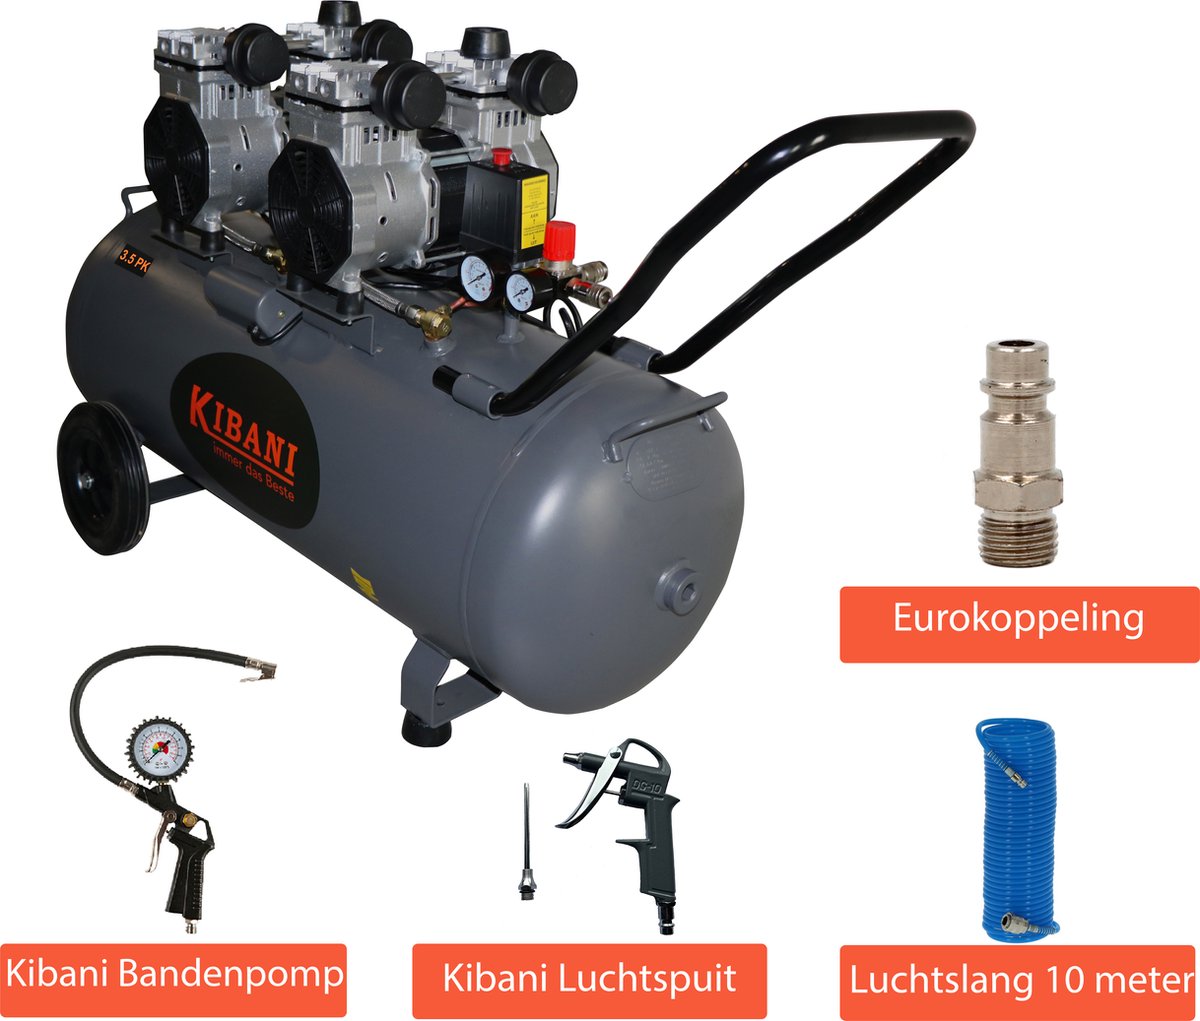 Kibani super stille compressor 100 Liter - Incl. luchtslang, eurokoppeling & bandenpomp - olievrij - 8 BAR - 63 dB - Low Noise - Compressoren - 100L